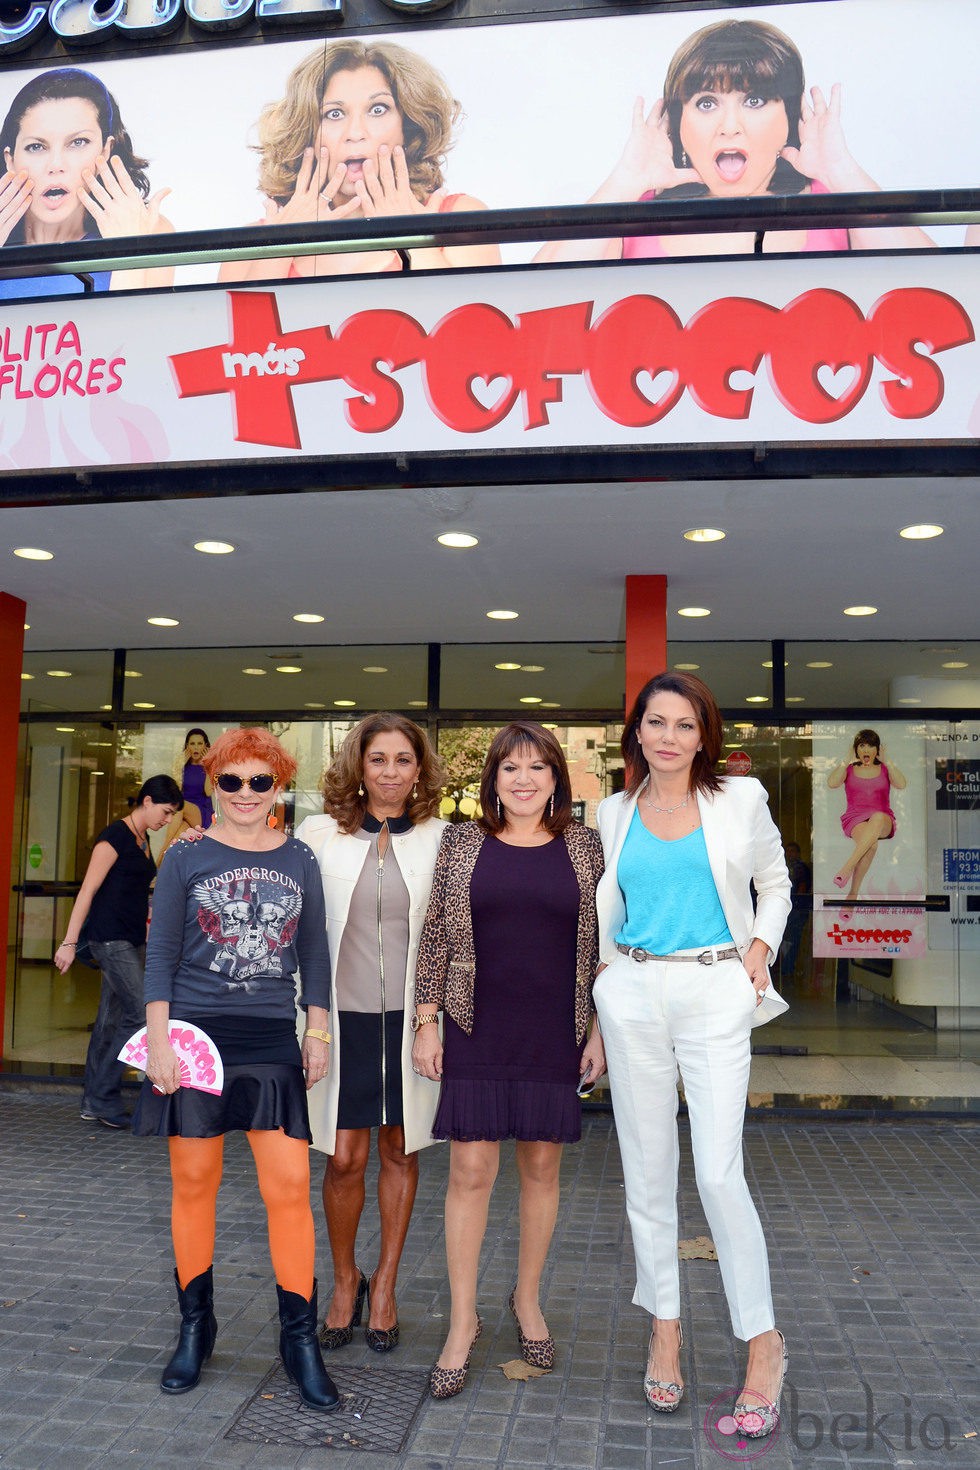 Alicia Orozco, Lolita Flores, Loles León y Fabiola Toledo presentan 'Más sofocos' en Barcelona